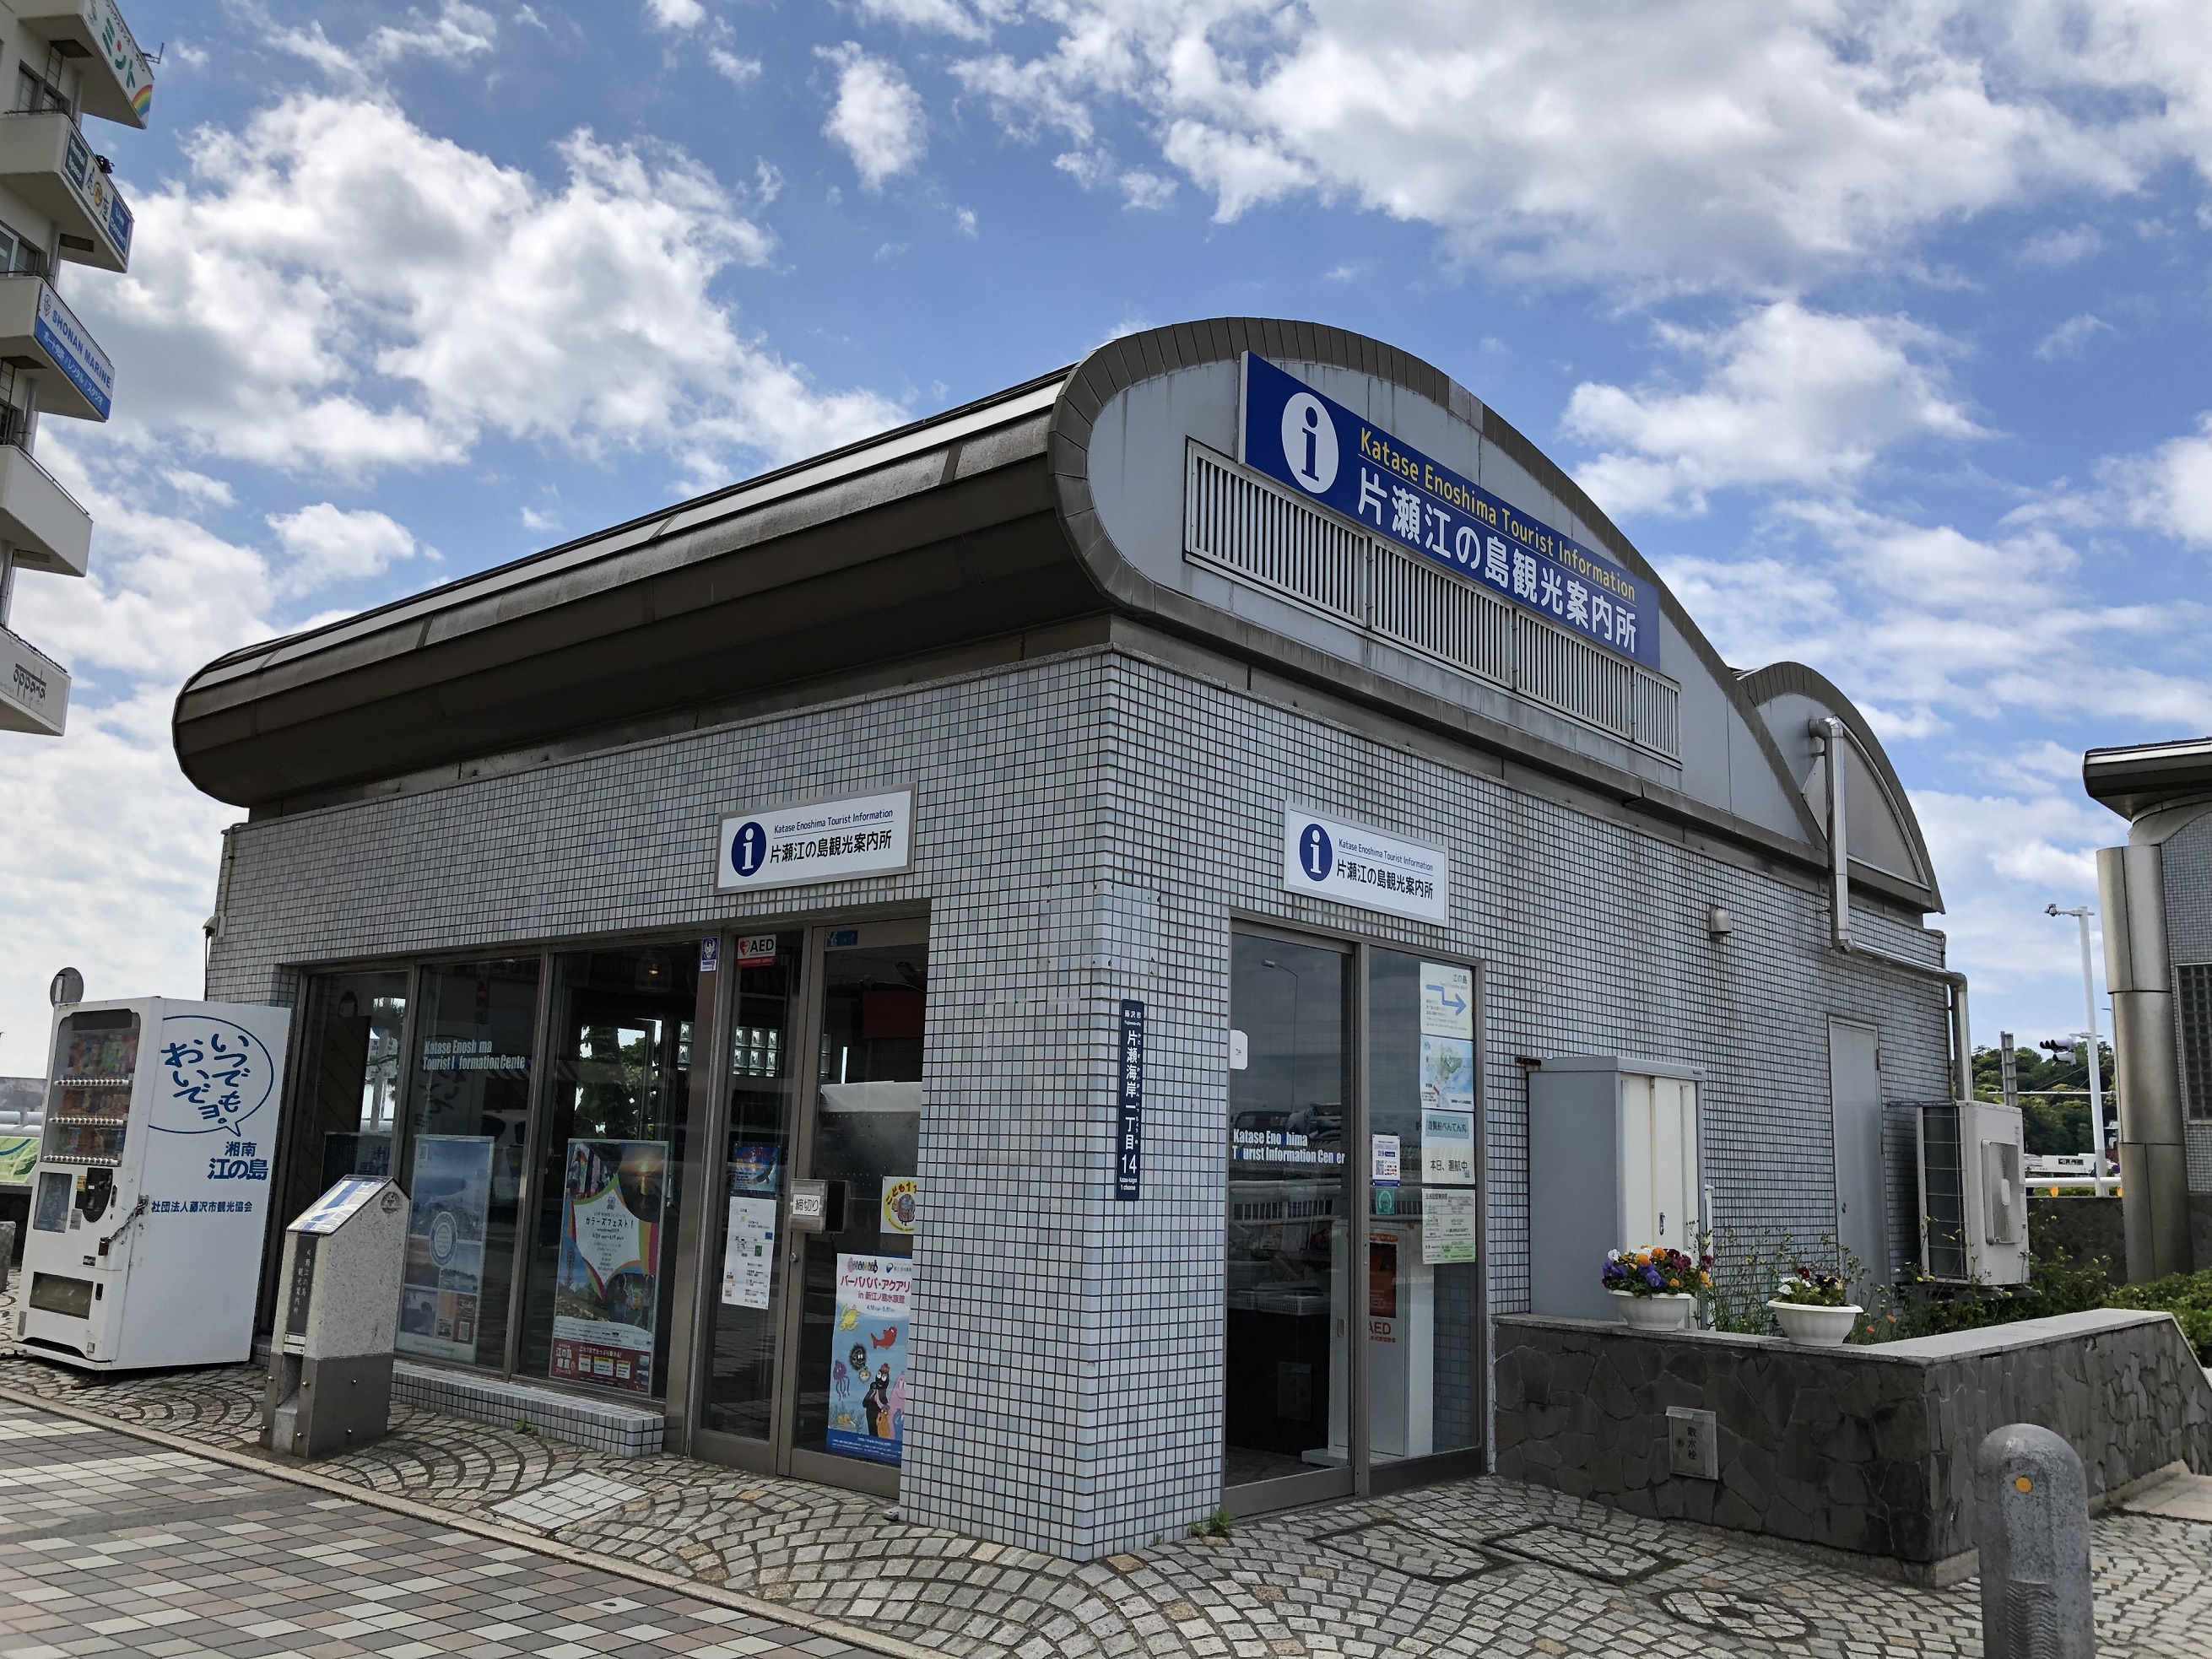 Oficina de turismo de Katase-Enoshima